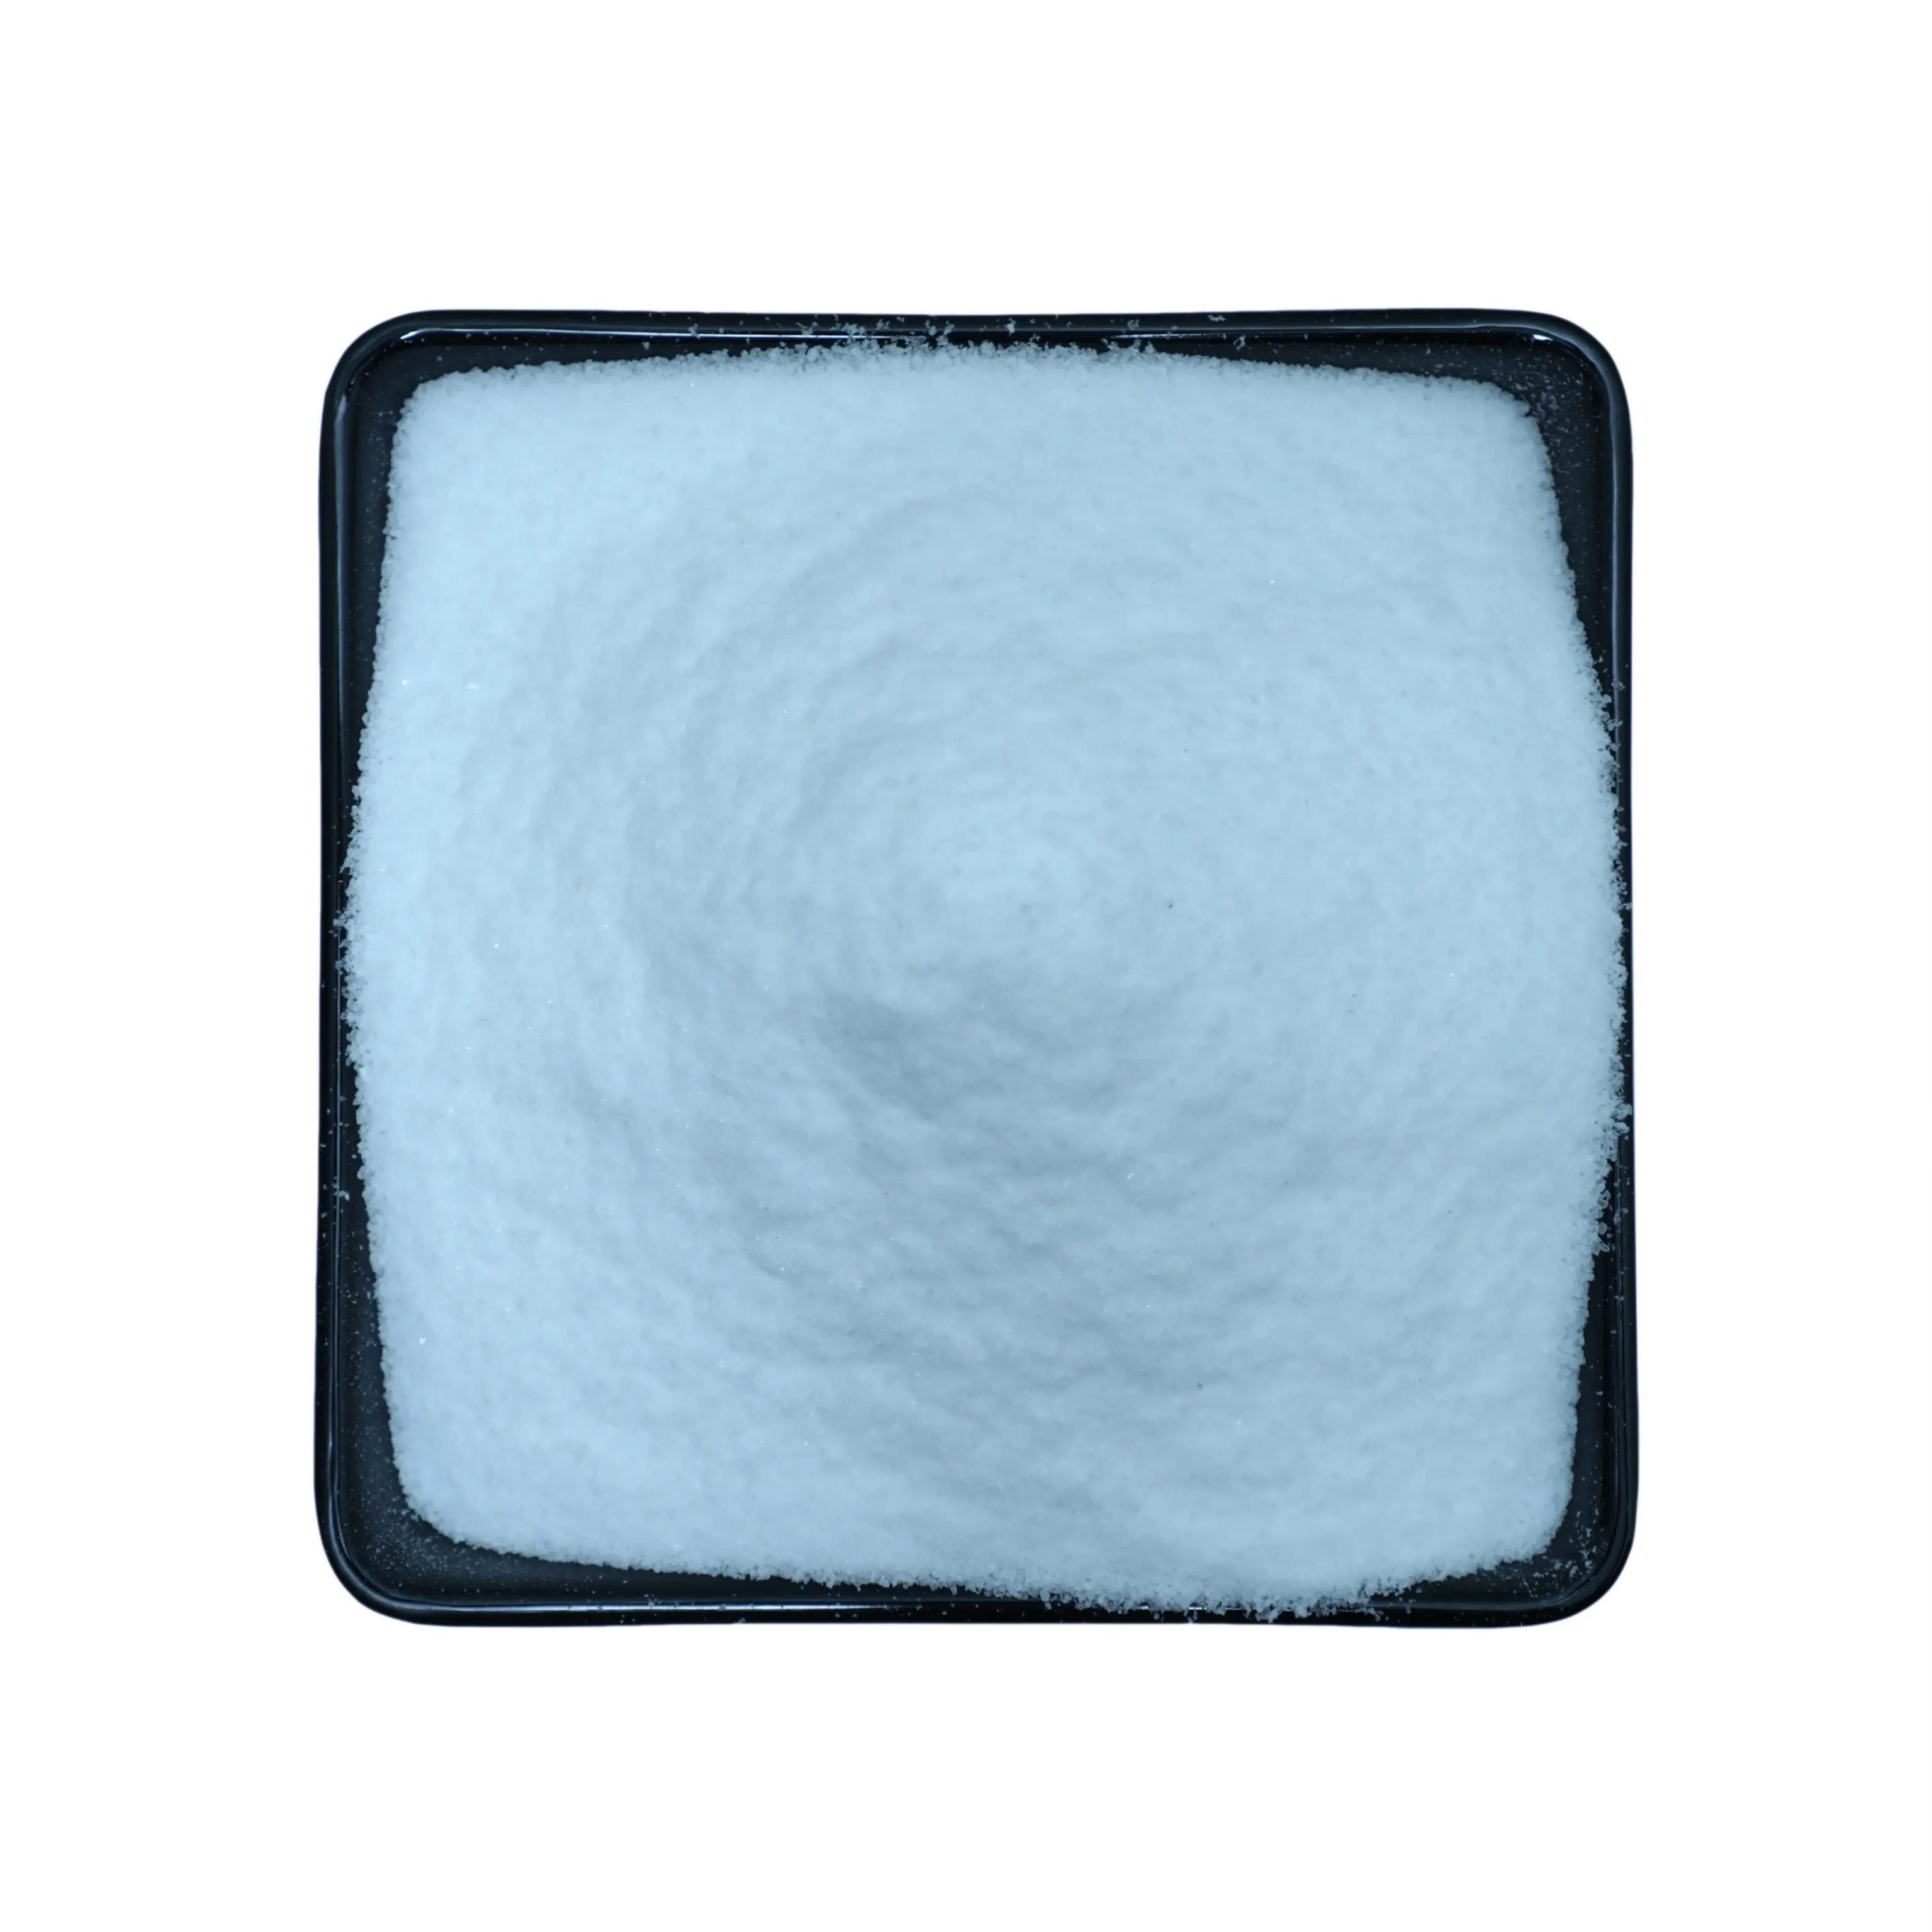 アジアの鉱物および関連産業からの水処理用のトップセール保証品質工業用グレード精製塩ナクル